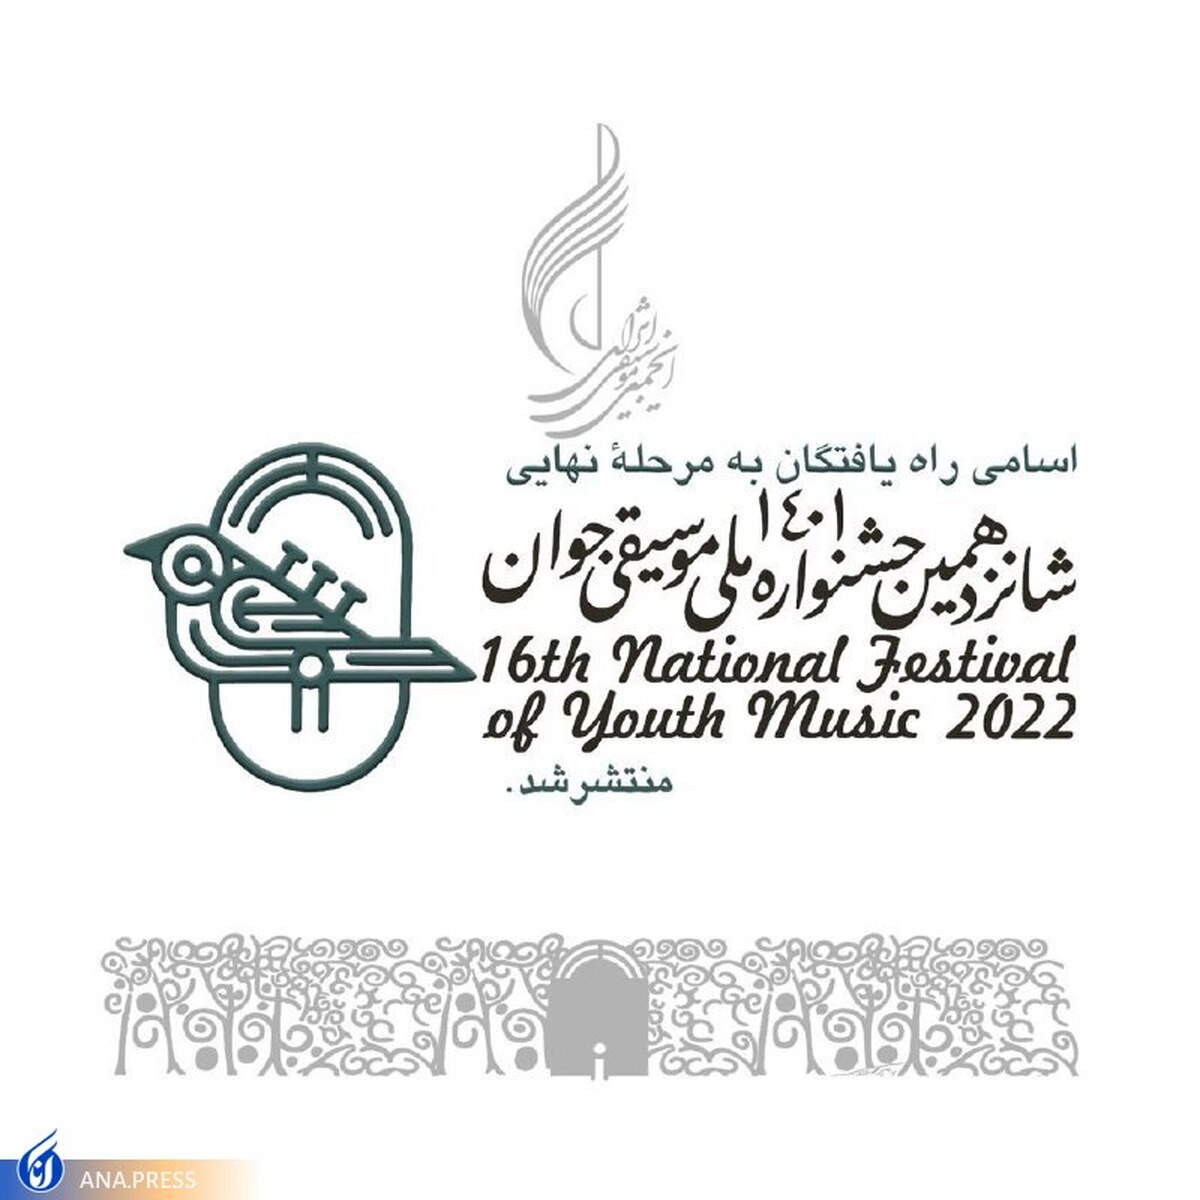 اسامی راه یافتگان به مرحله نهایی جشنواره ملی موسیقی جوان اعلام شد